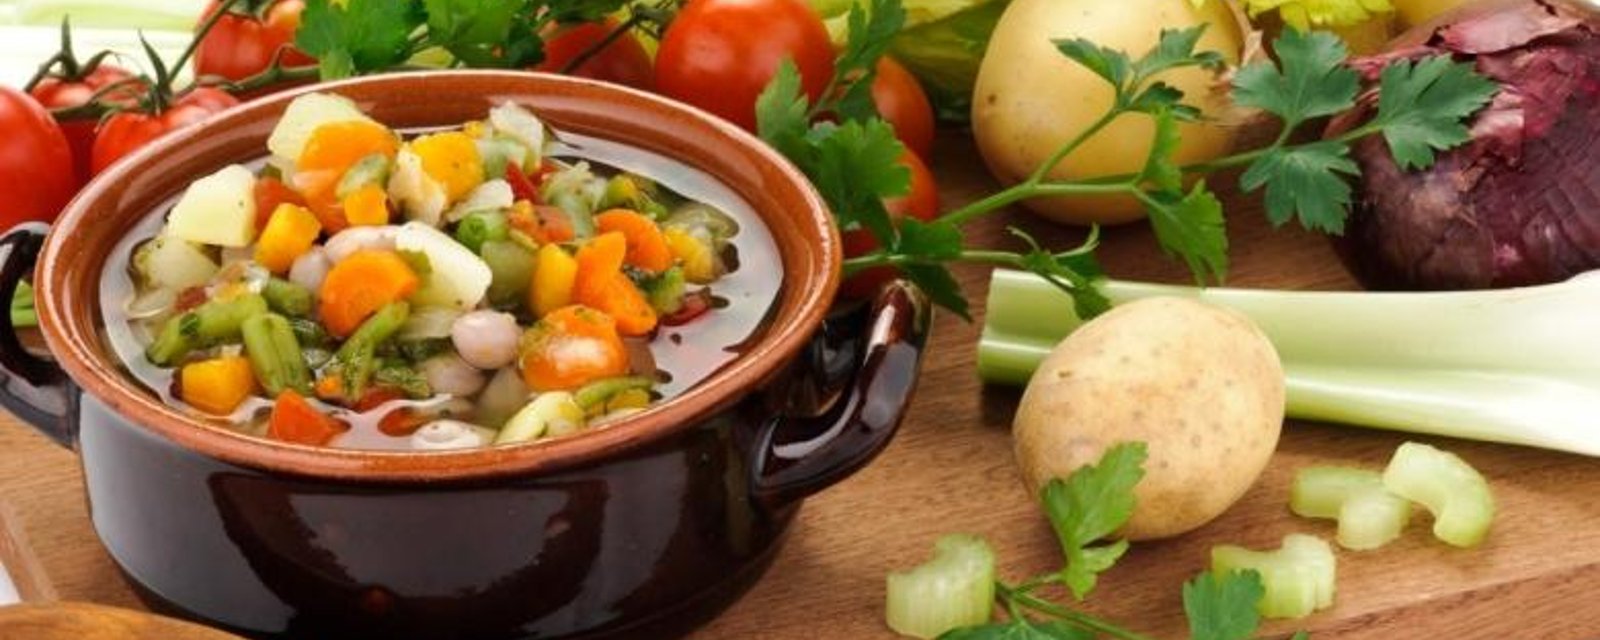 Soupe aux légumes dans un bouillon de boeuf